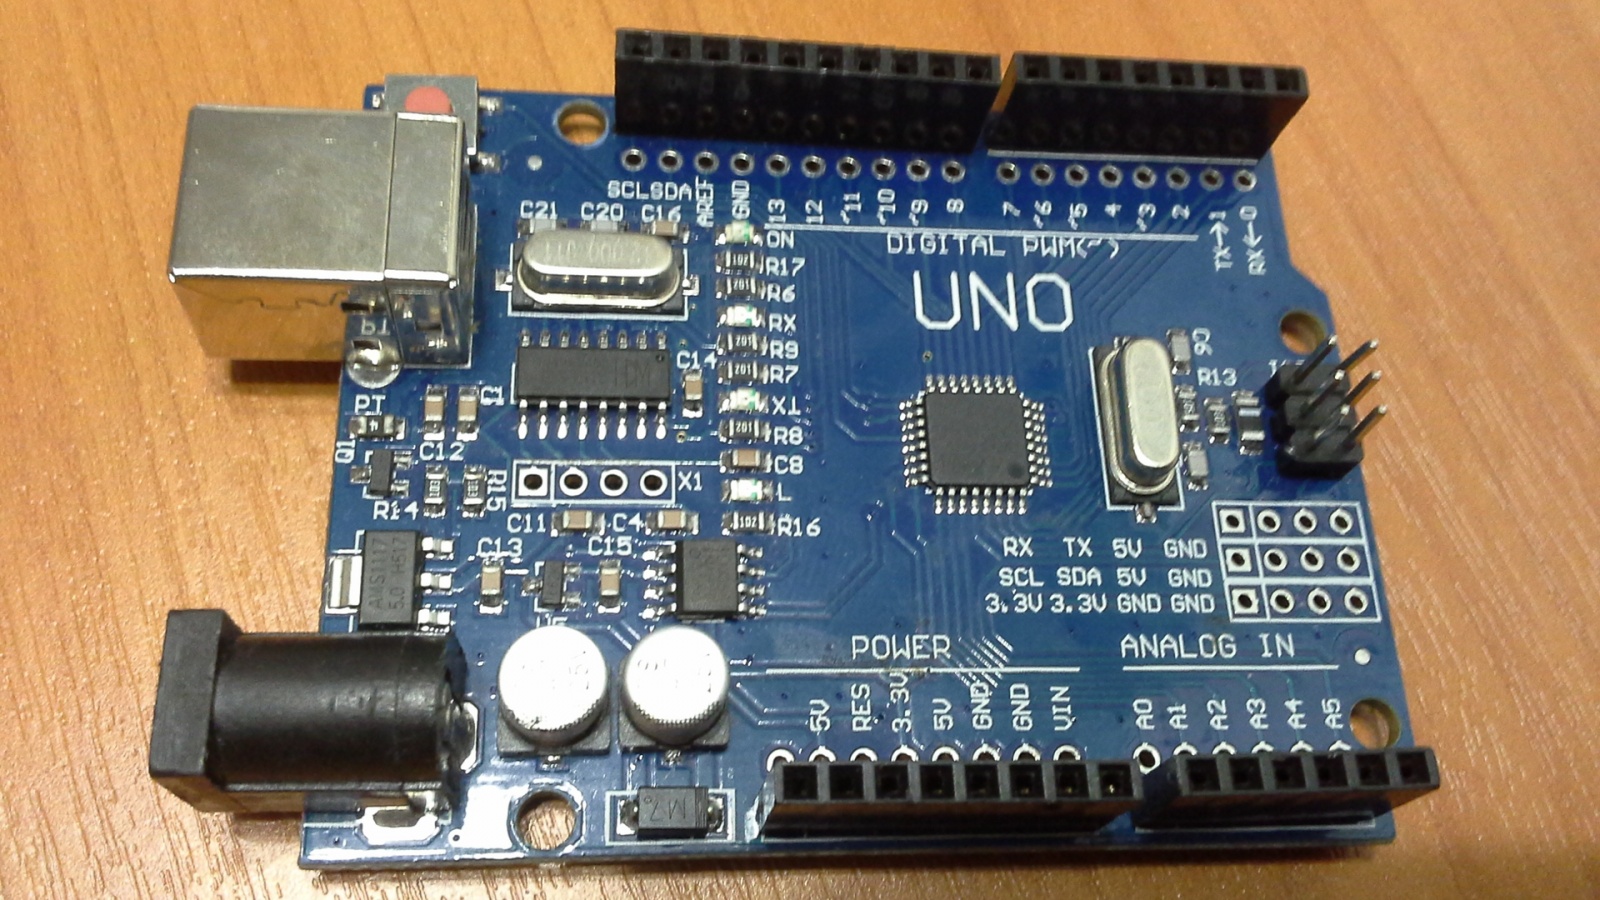 Управление шлагбаумом с помощью Arduino UNO и радиопередатчика 433 МГц - 1